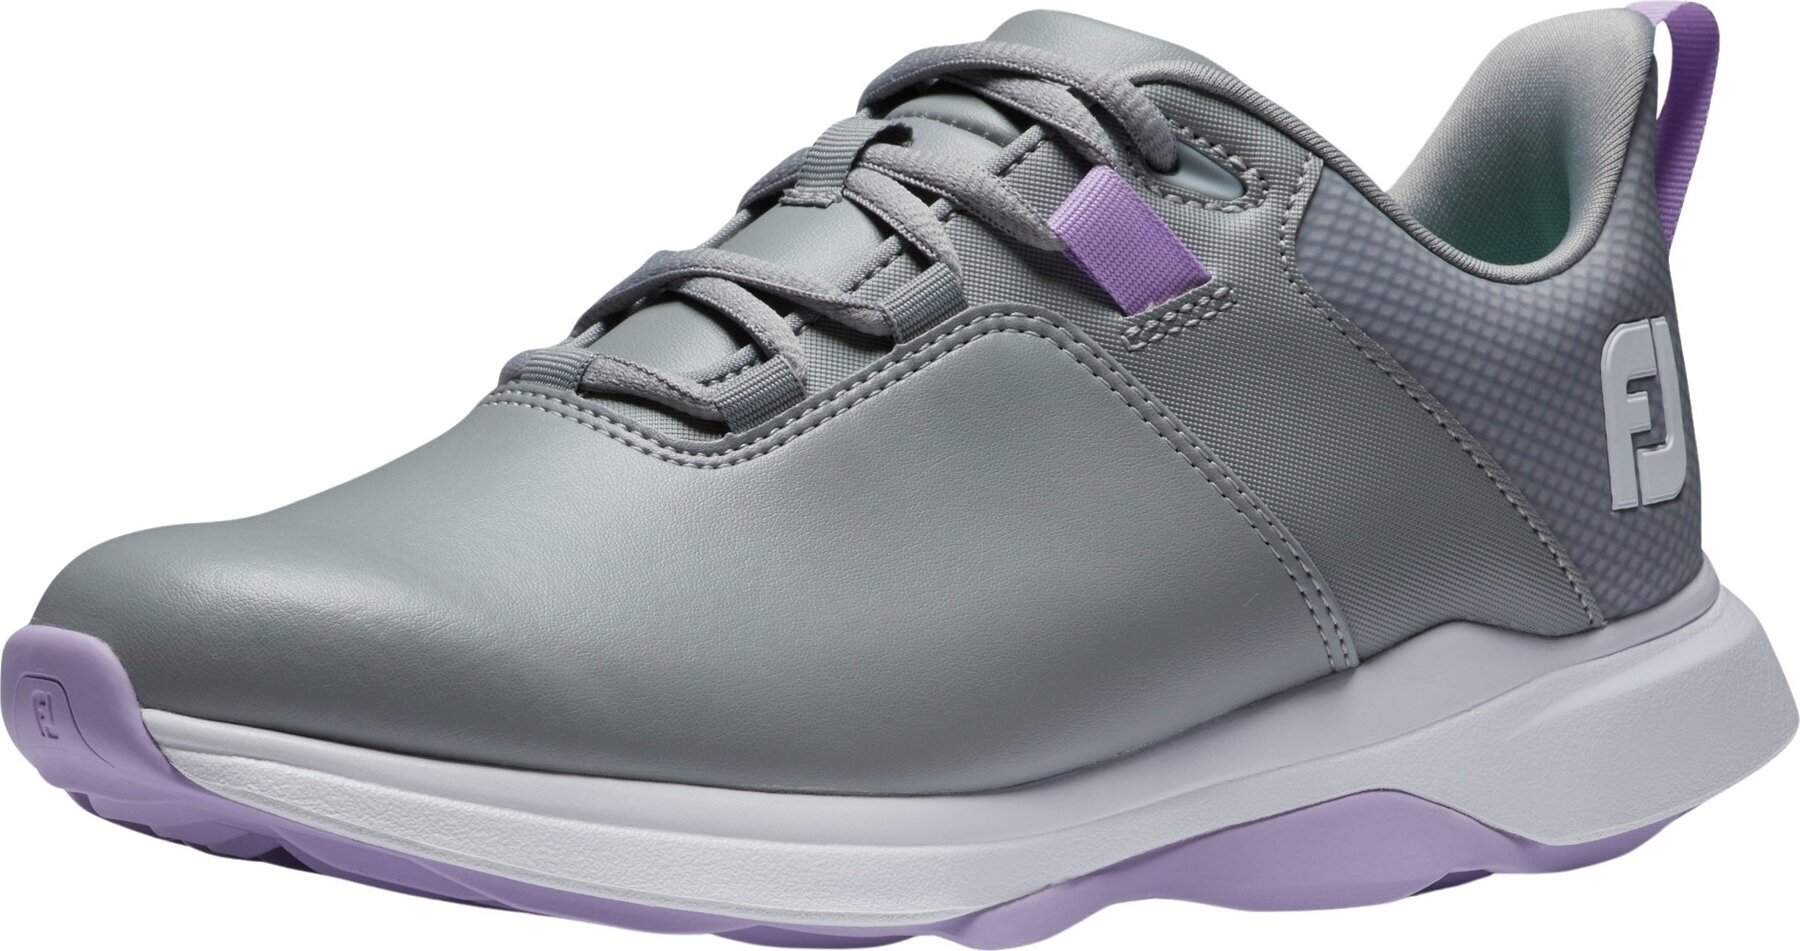 Chaussures de golf pour femmes Footjoy ProLite Womens Golf Shoes Grey/Lilac 38